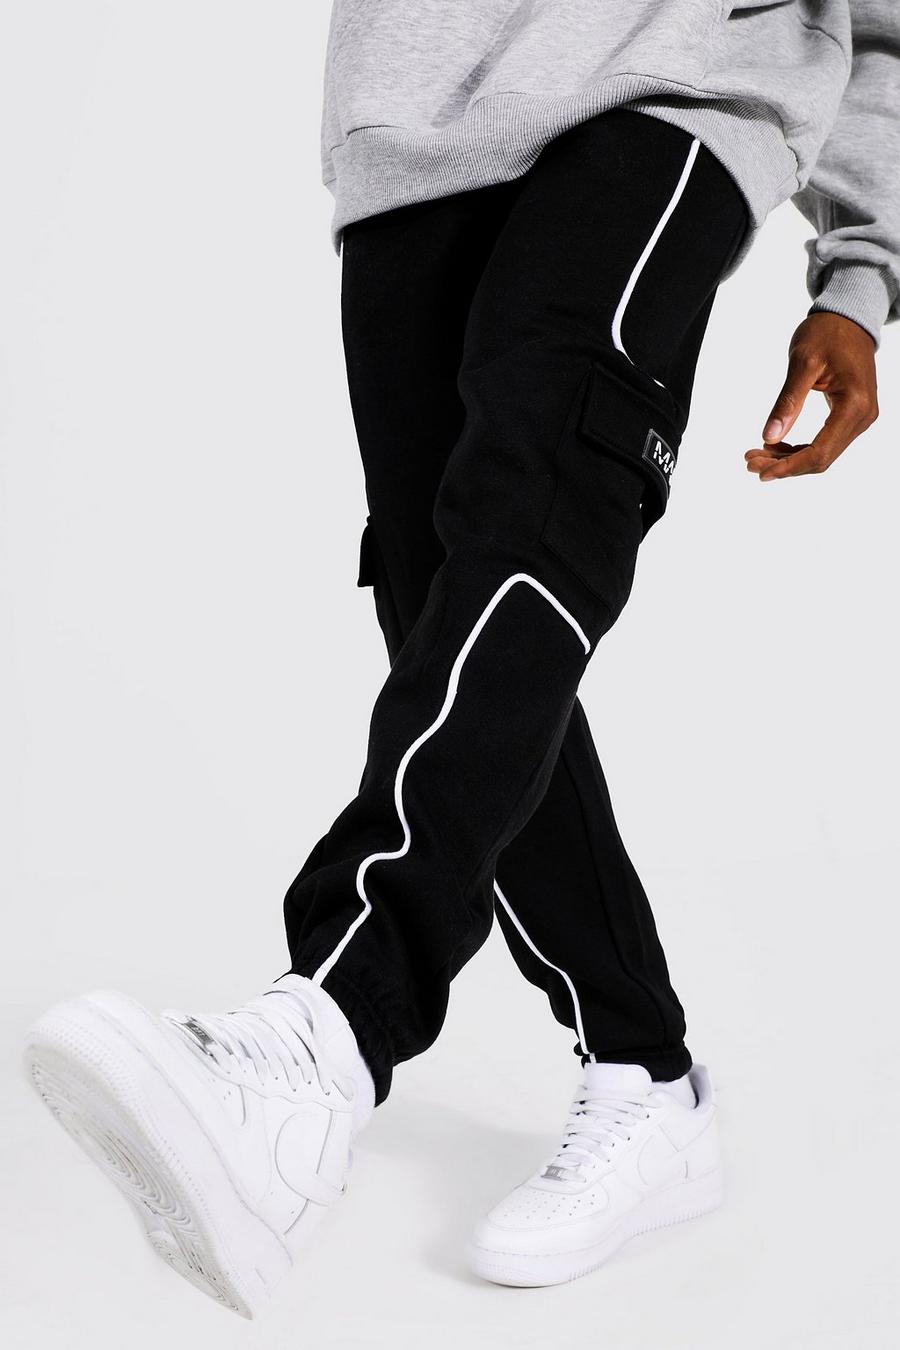 Pantalón deportivo cargo MAN con ribete y etiqueta de goma, Black negro